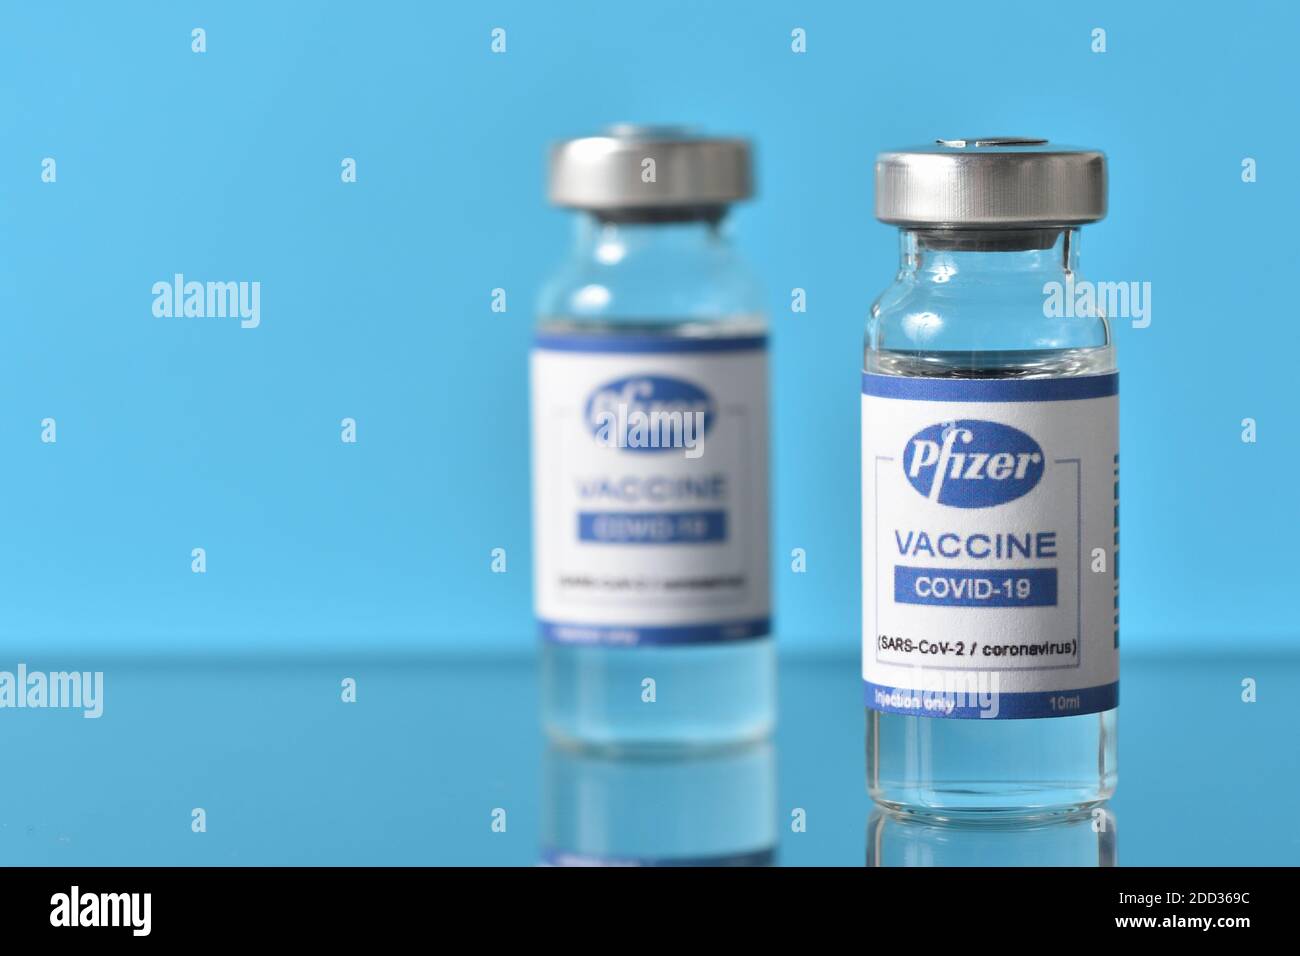 STARIY OSKOL, RUSSIA - 23 NOVEMBRE 2020: Vaccino del coronavirus annunciato da Pfizer e Biontech su sfondo blu Foto Stock